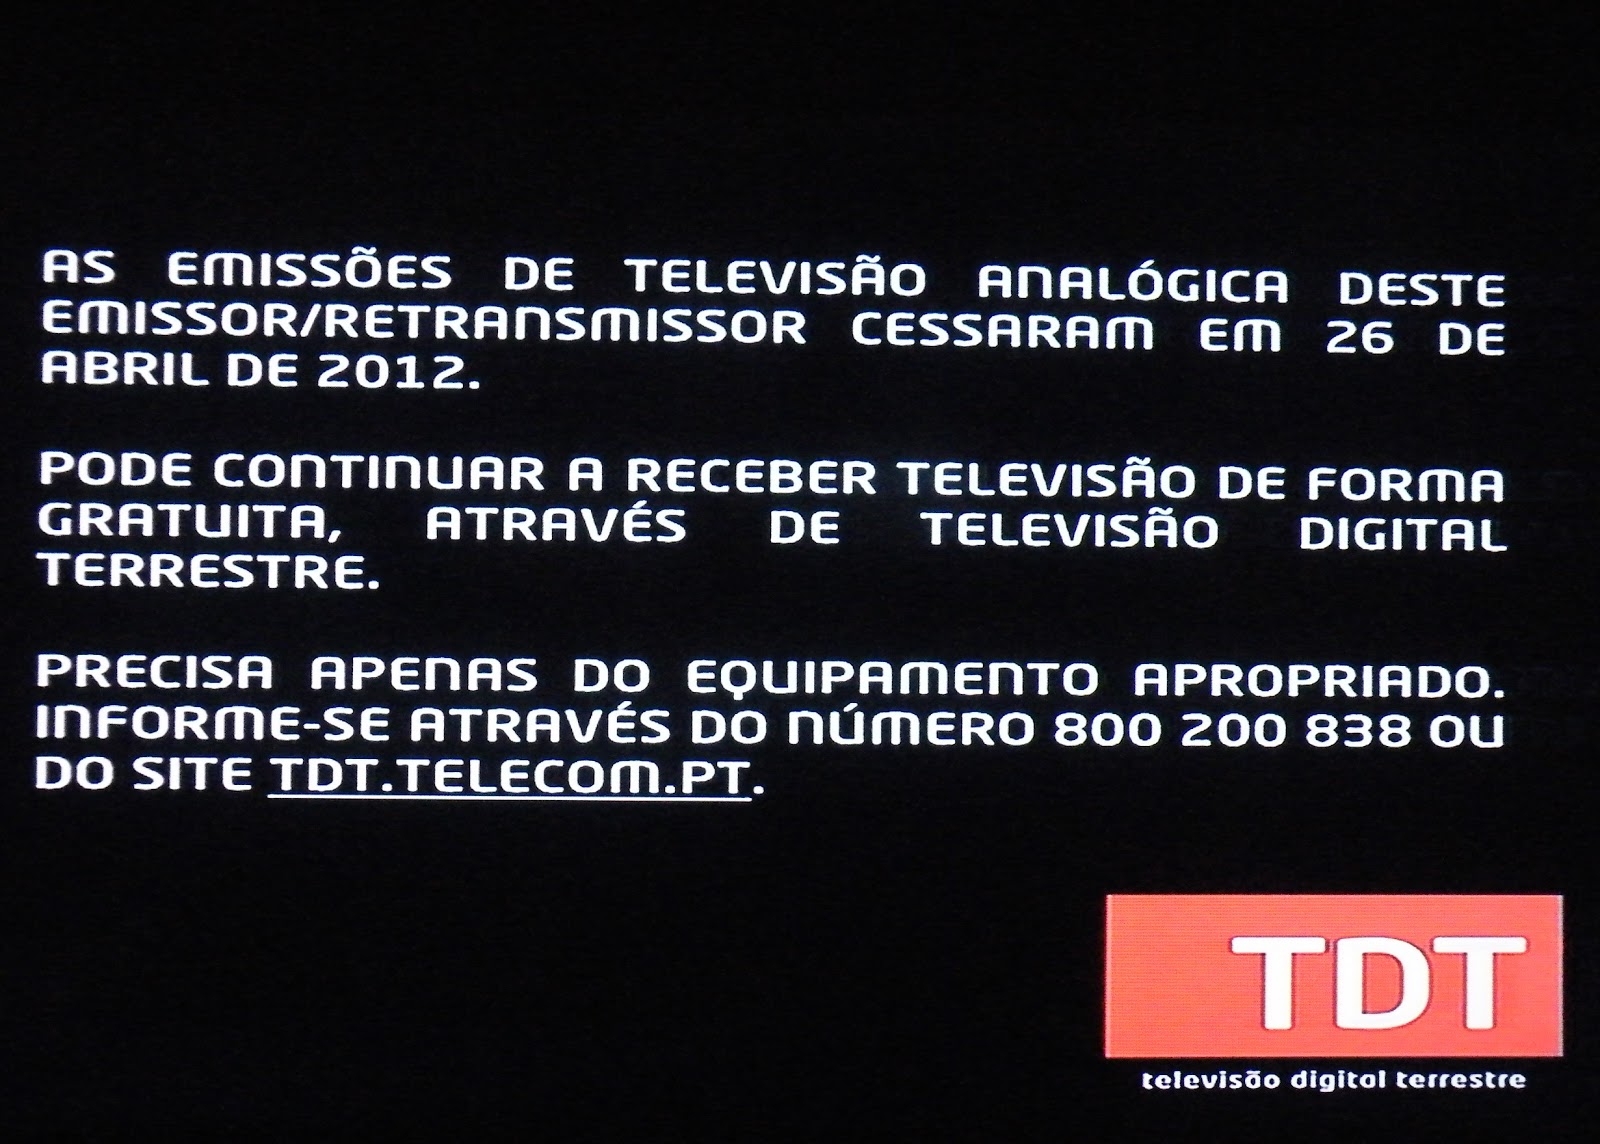 Geral [Universo televisivo português] - Página 3 Arronches+Anal%C3%B3gico+e+TDT+26-04-2012+(32)